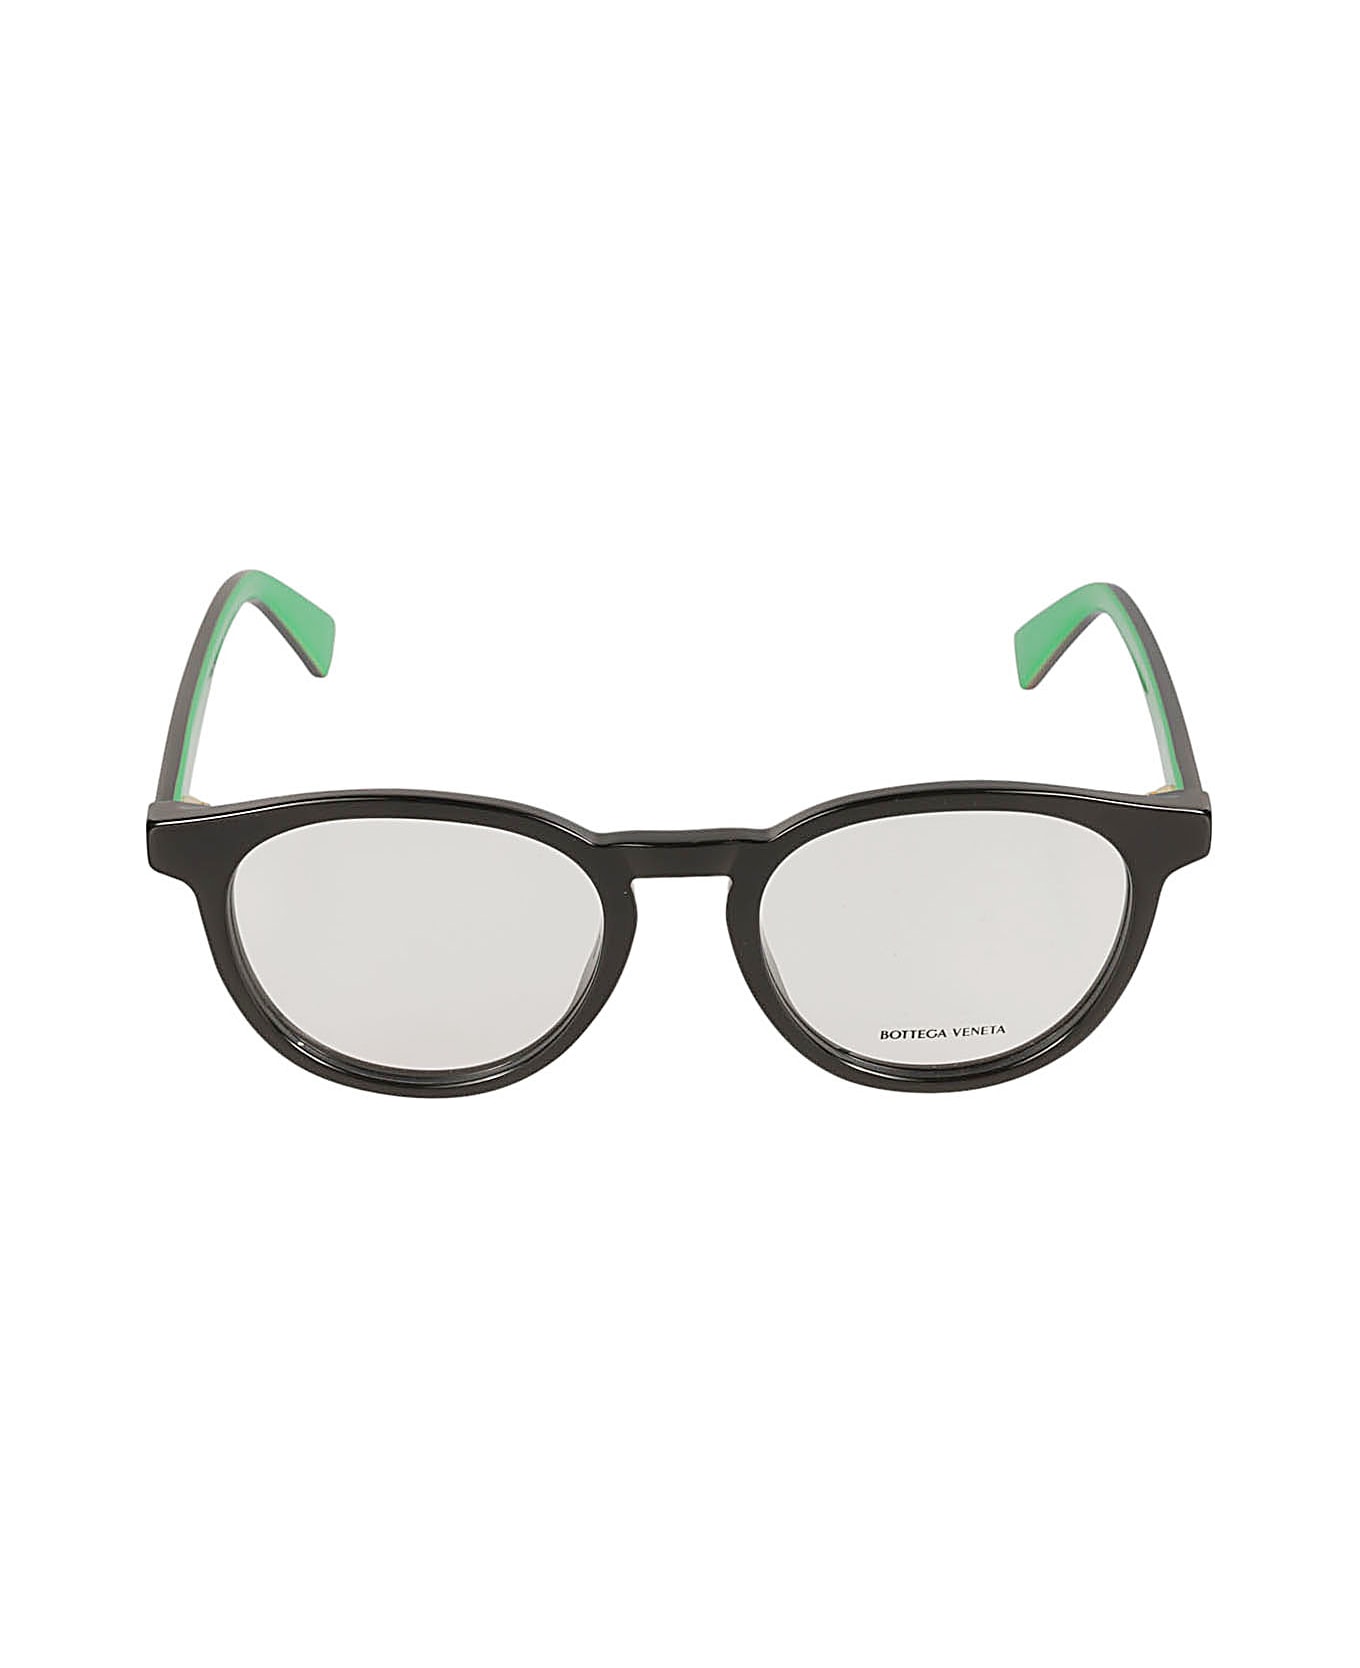 Bottega Veneta Eyewear Classic Round Frame Glasses - Black/Transparent アイウェア